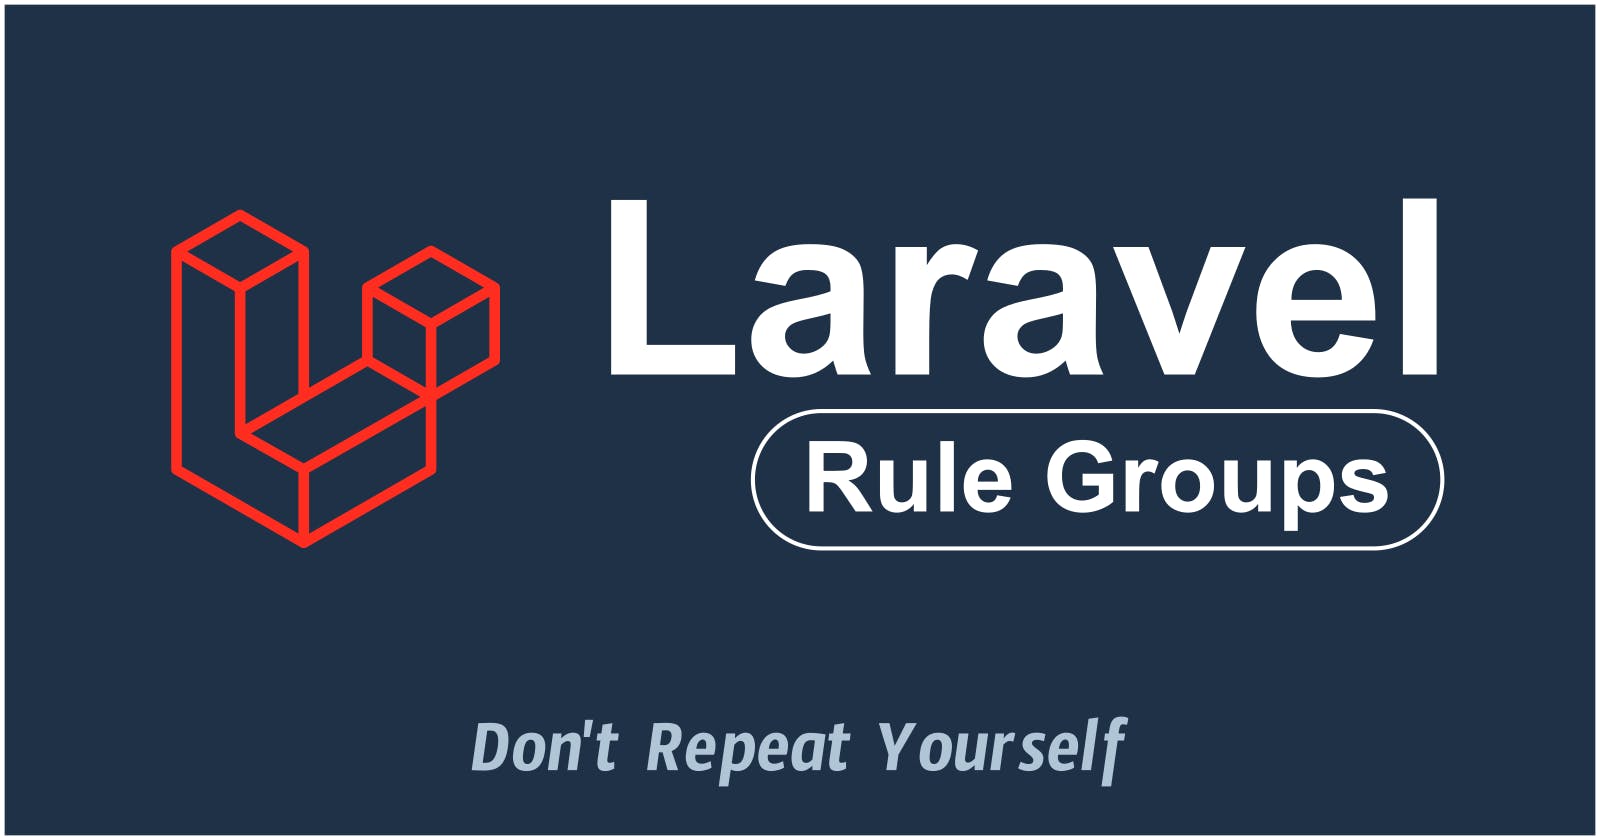 Laravel Rule Groups - DRY